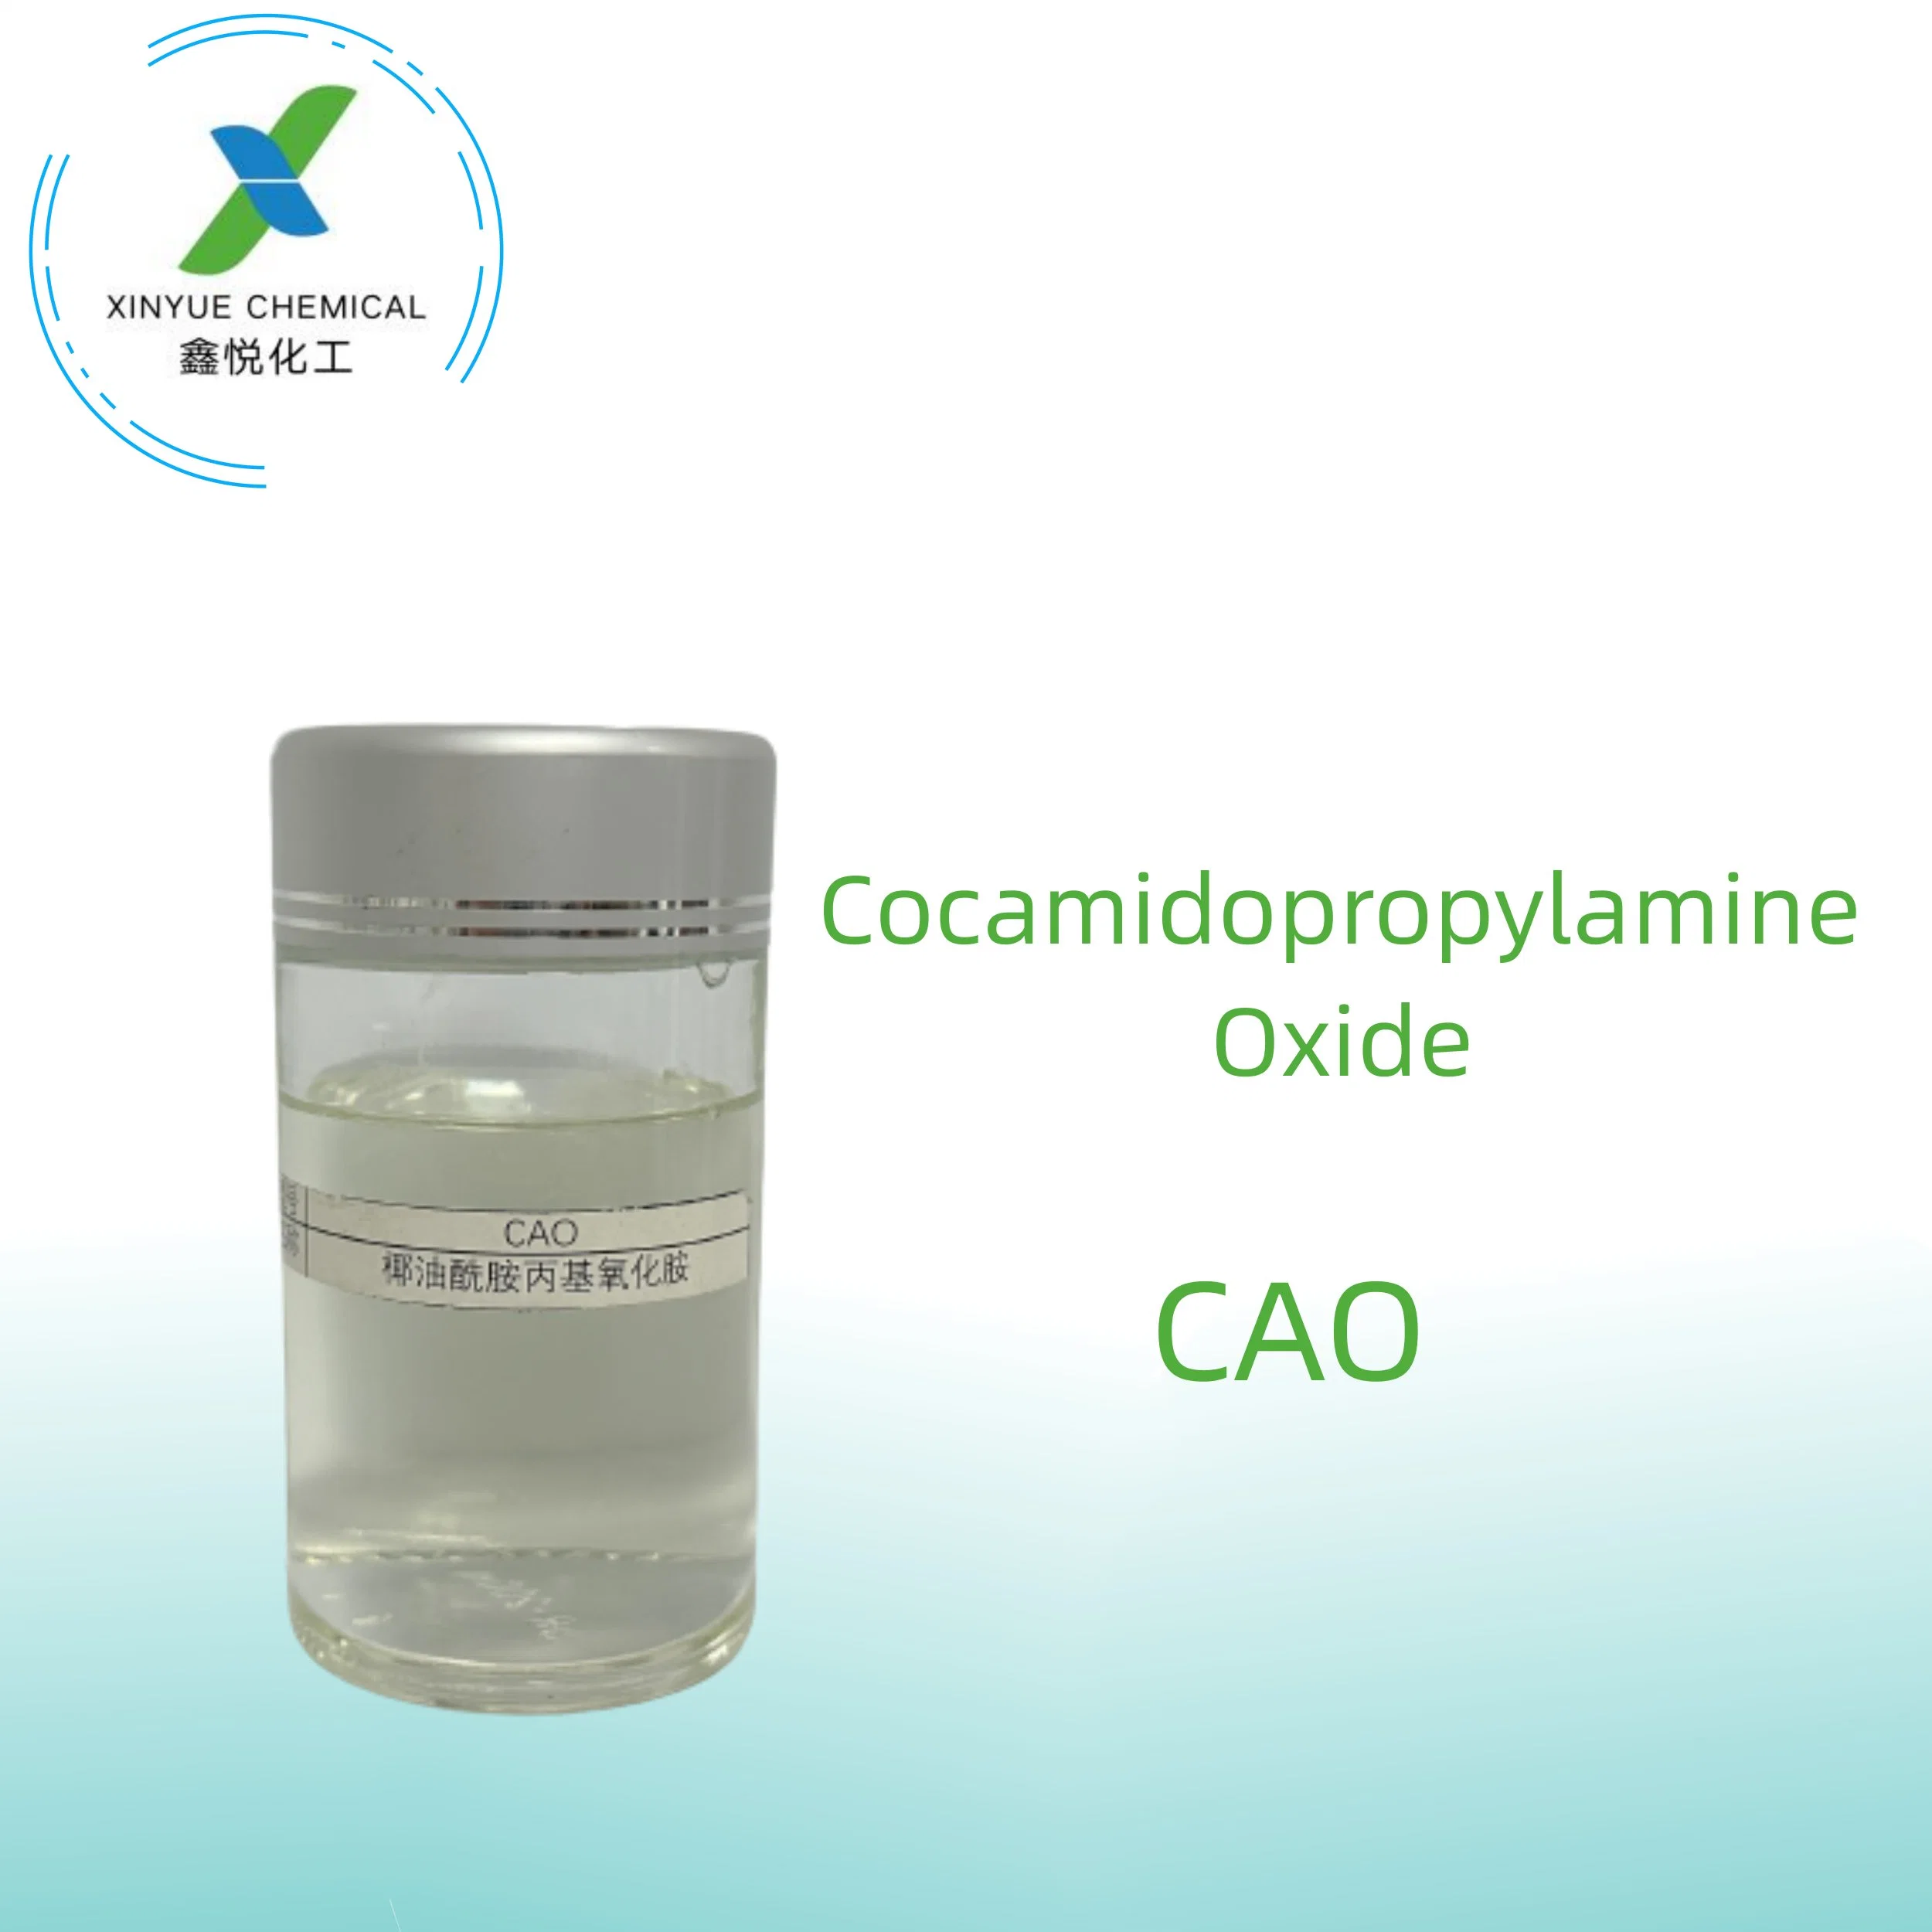 Cocamidopropyldimethylamine Oxide en tant qu'agent tensioactif ou agent chimique quotidien.